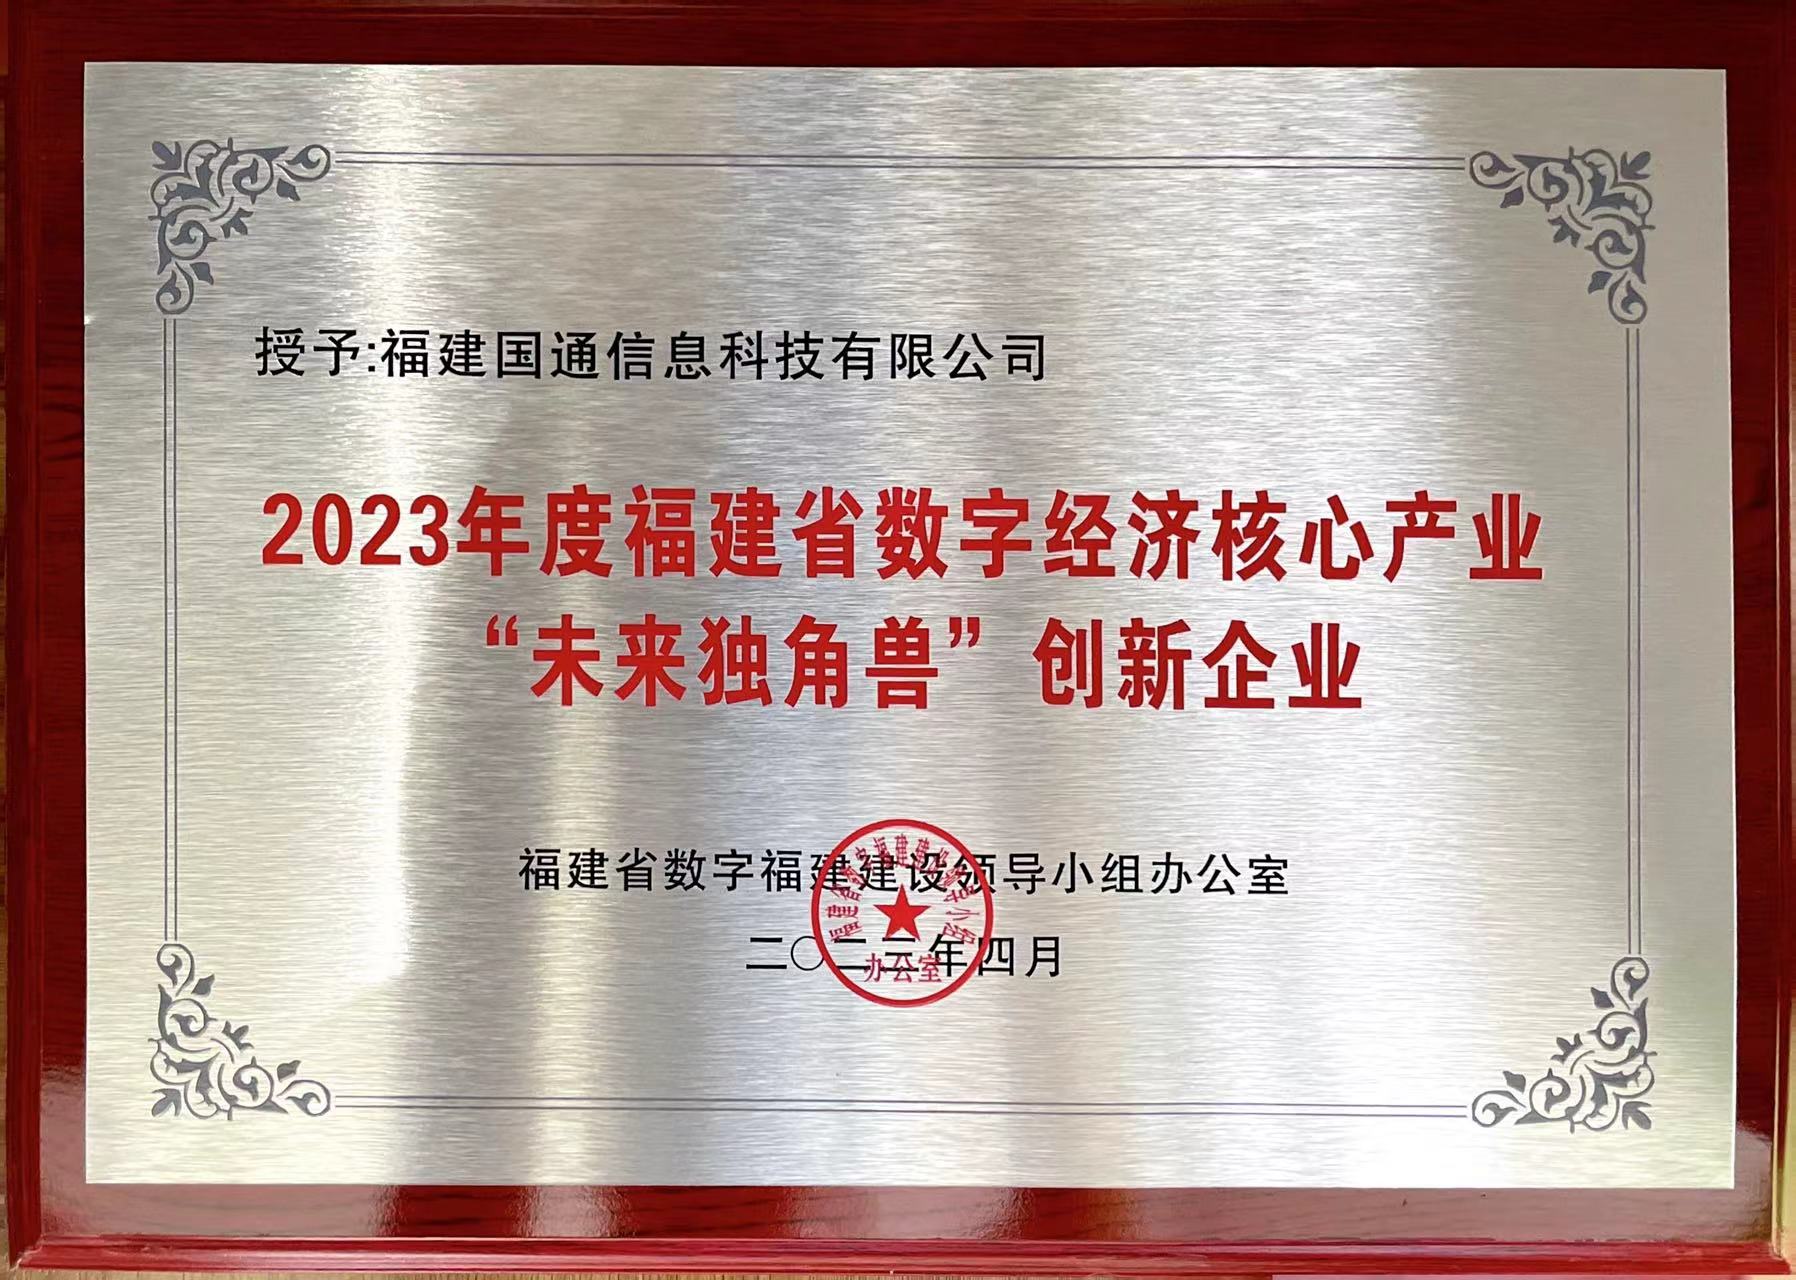 2023年度福建省數字經濟核心産業“未來獨角獸”創新企業